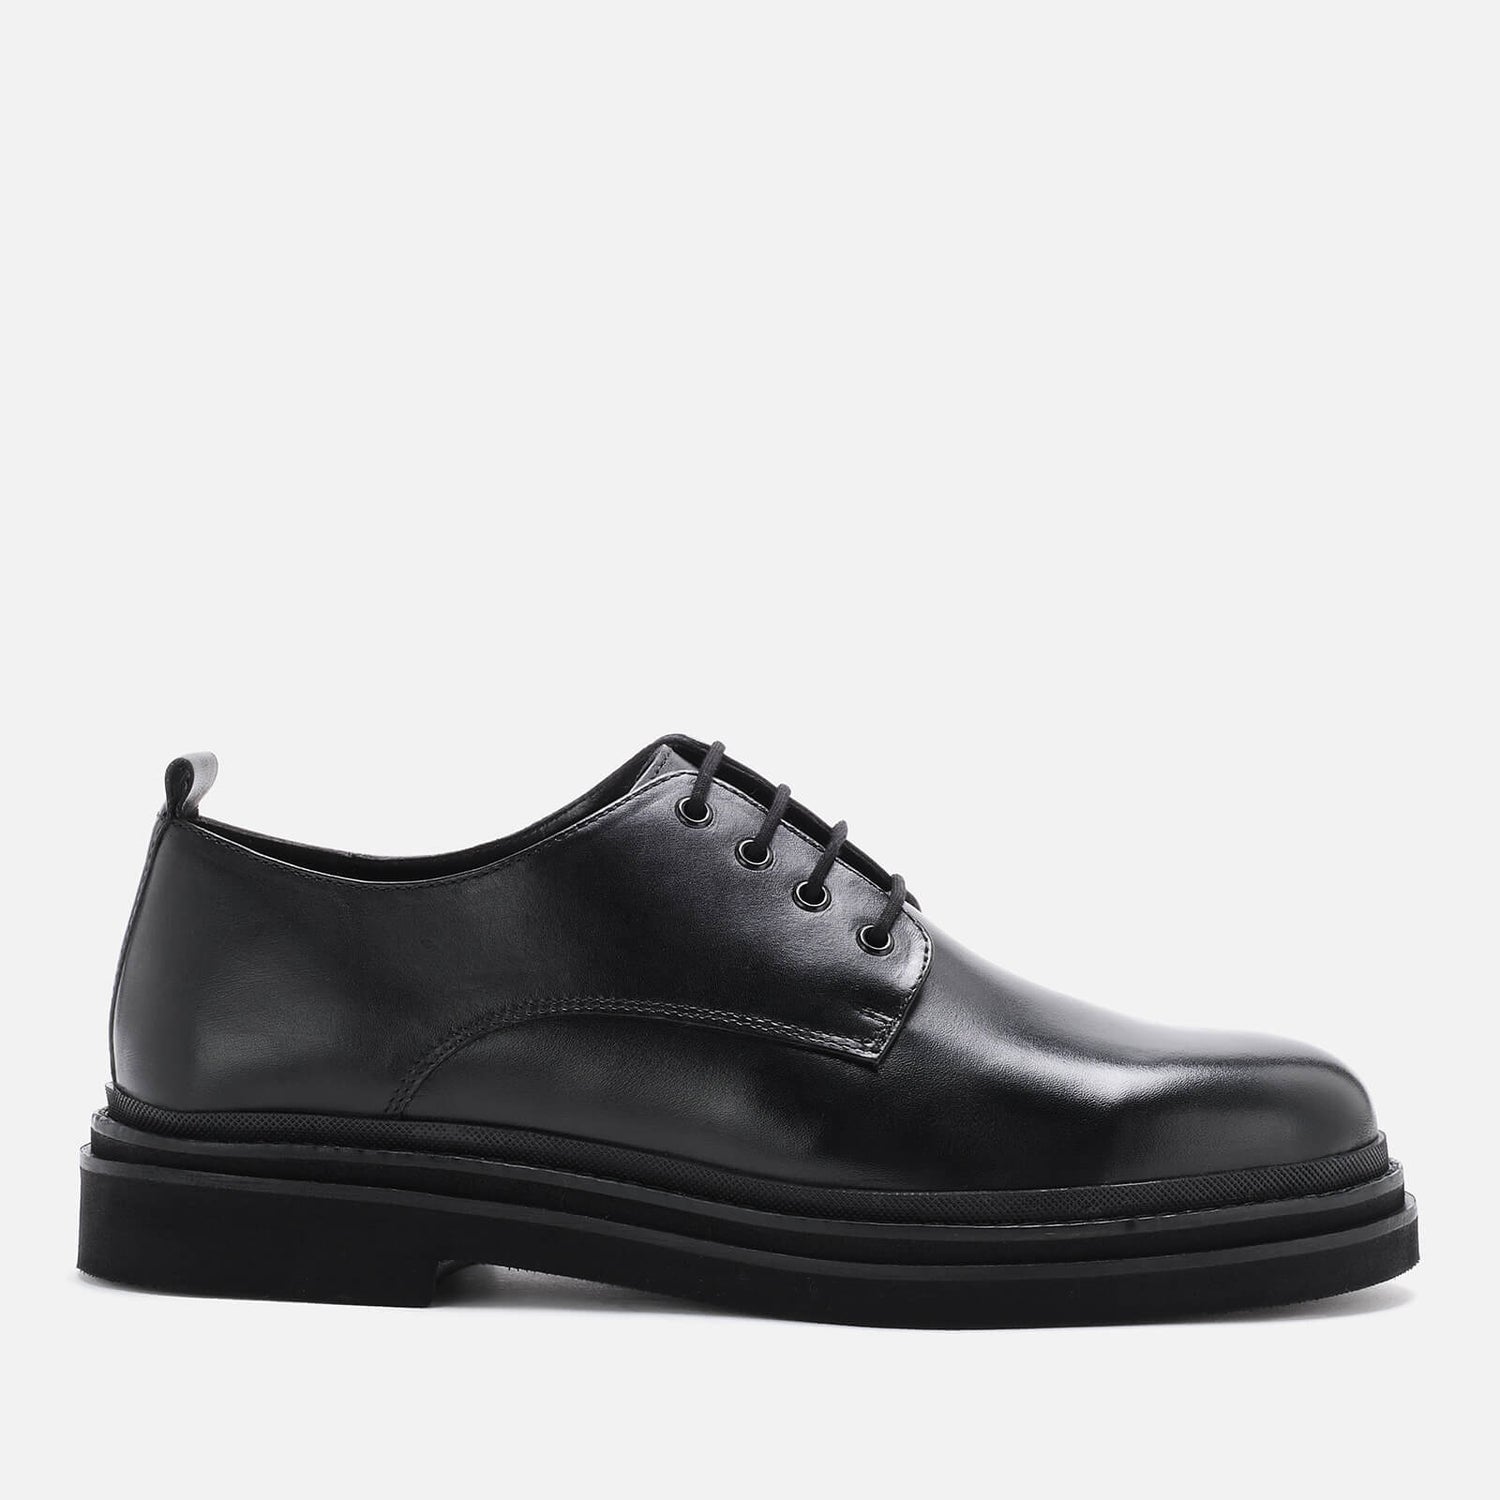 Walk London Men's Brooklyn Leather Derby Shoes - Black - UK 7